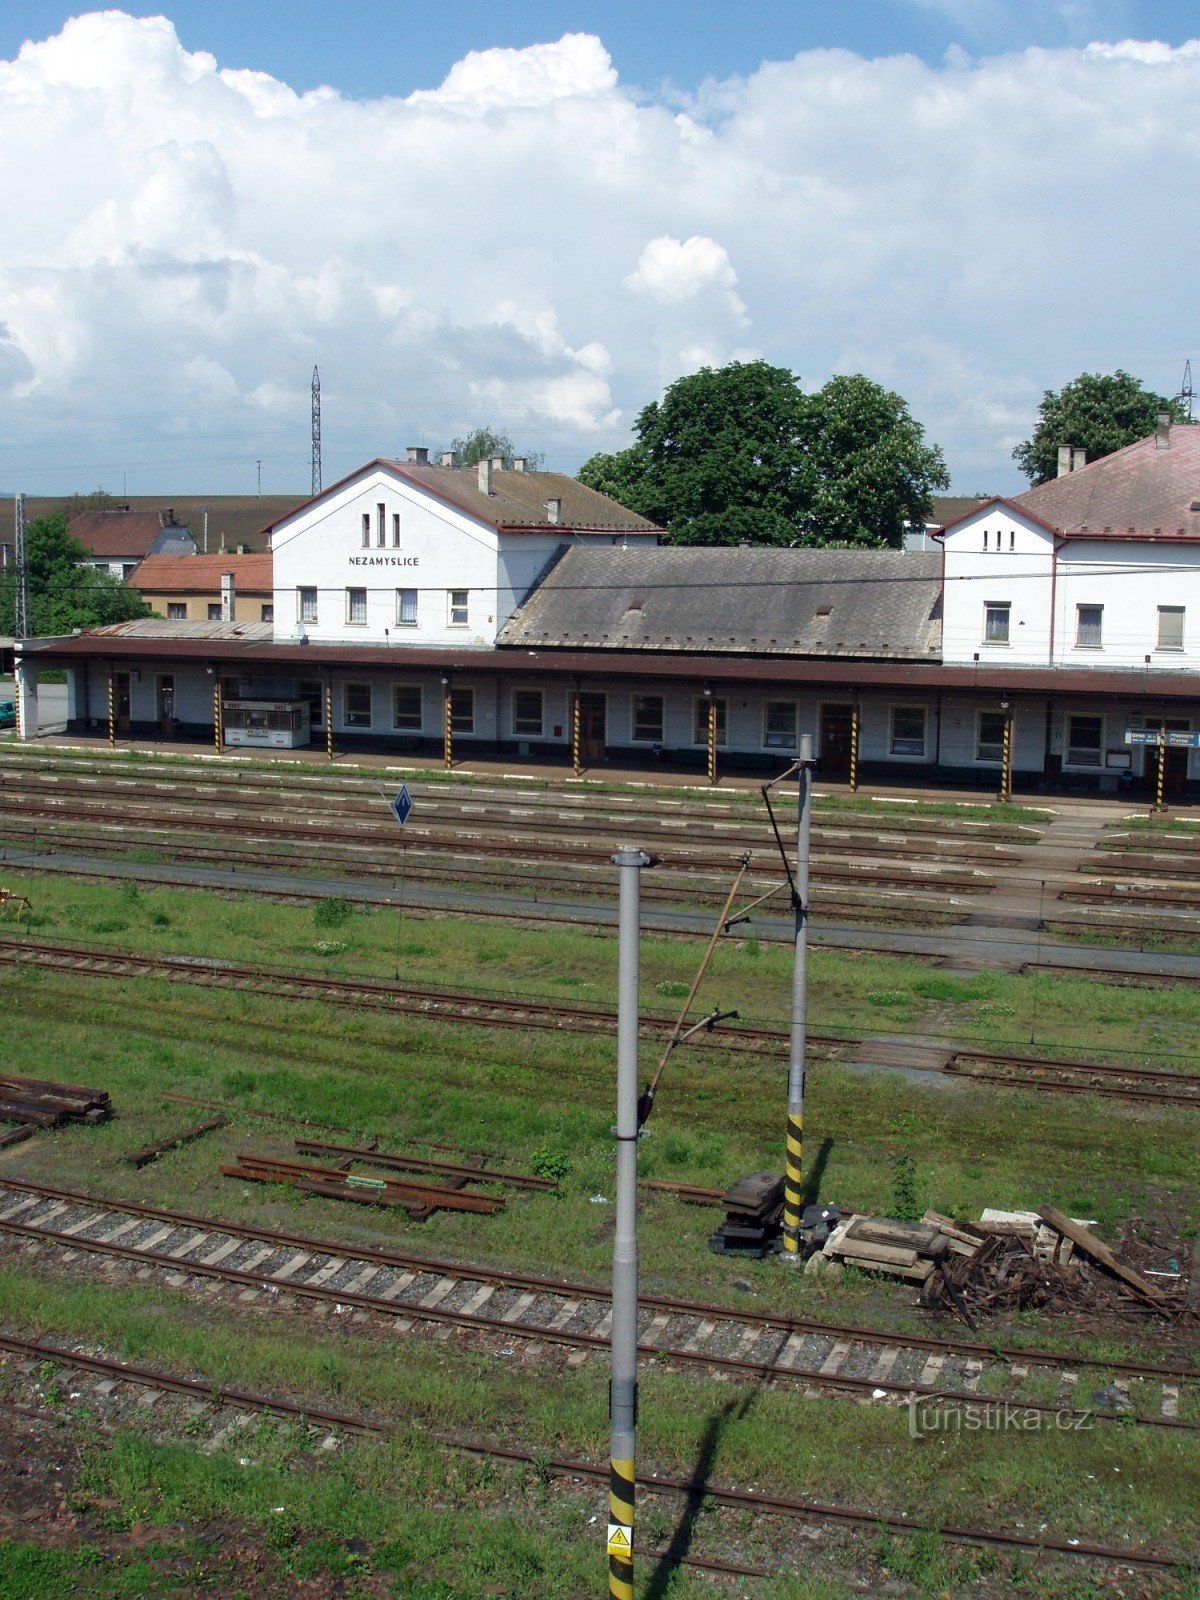 Nezamyslice järnvägsstation från hyreshuset